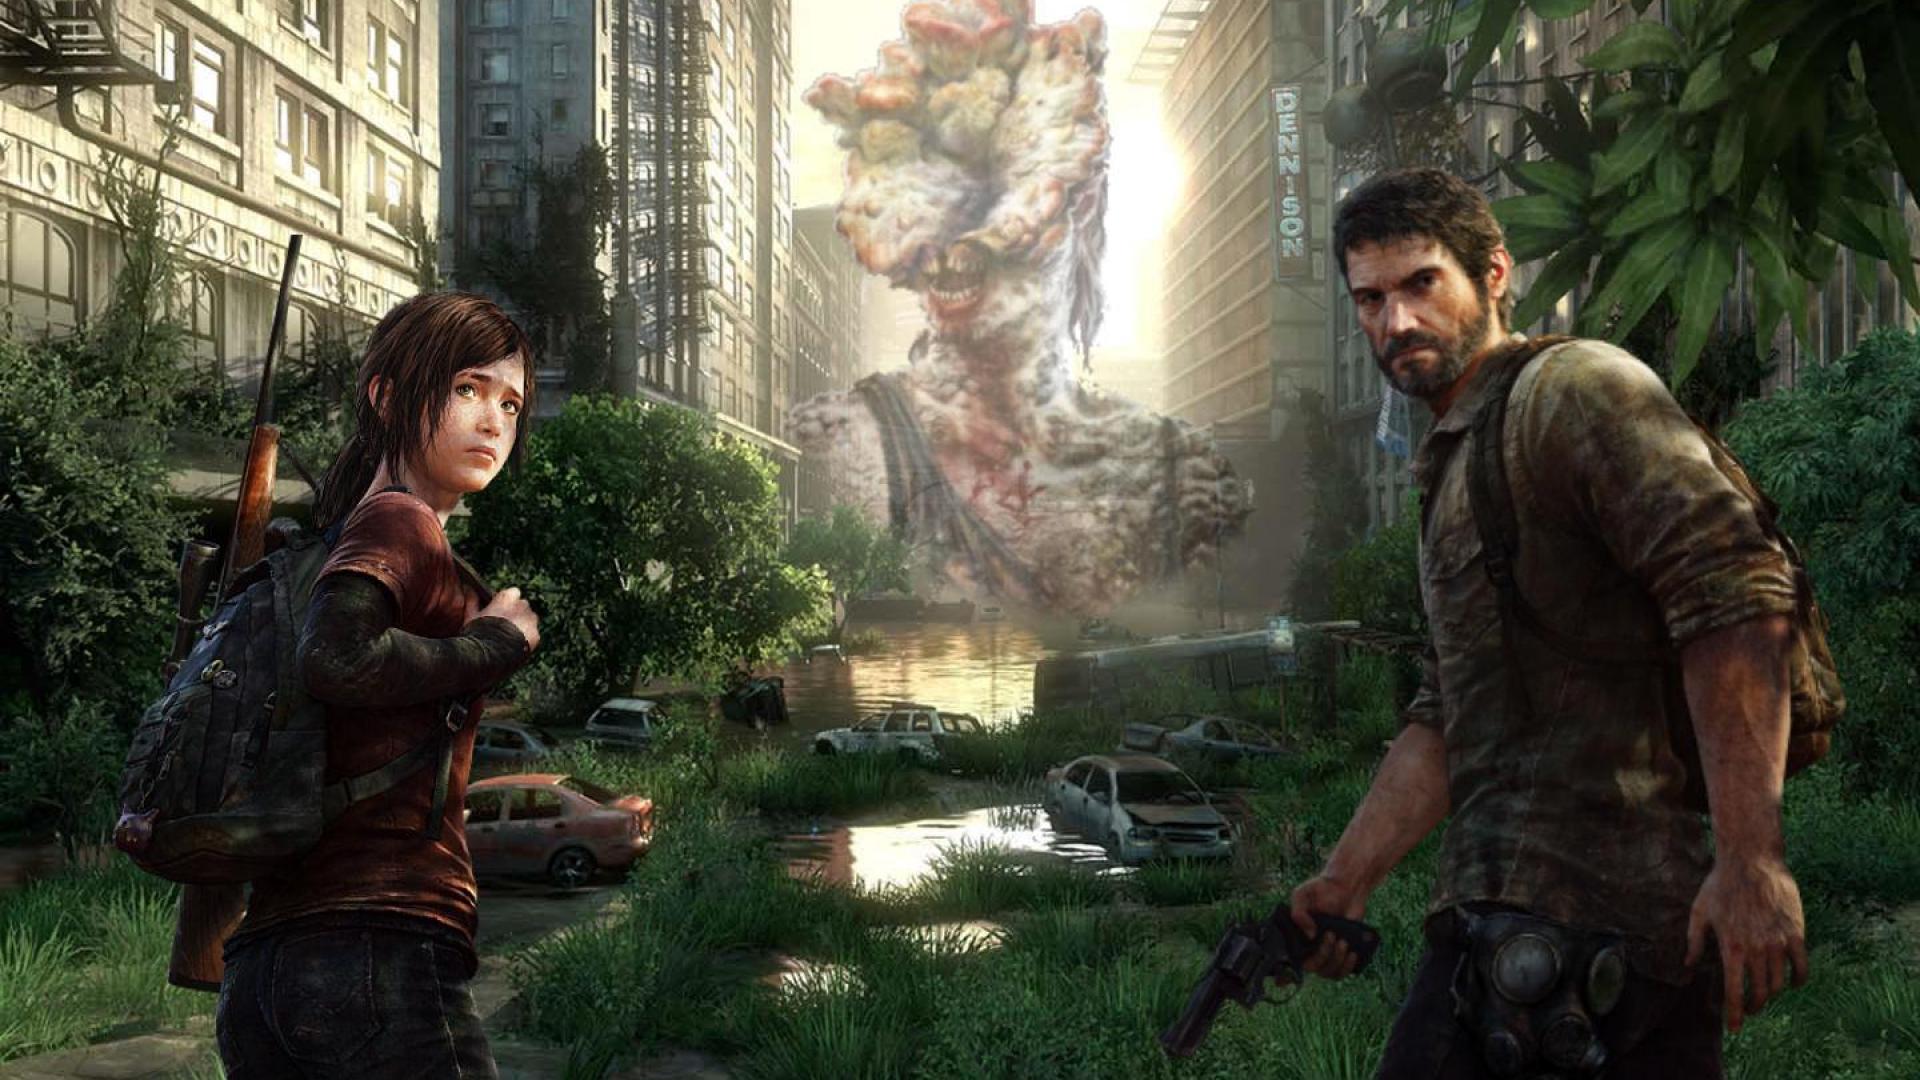 The Last of Us PS3 Game #game #last #1080P #wallpaper #hdwallpaper #desktop